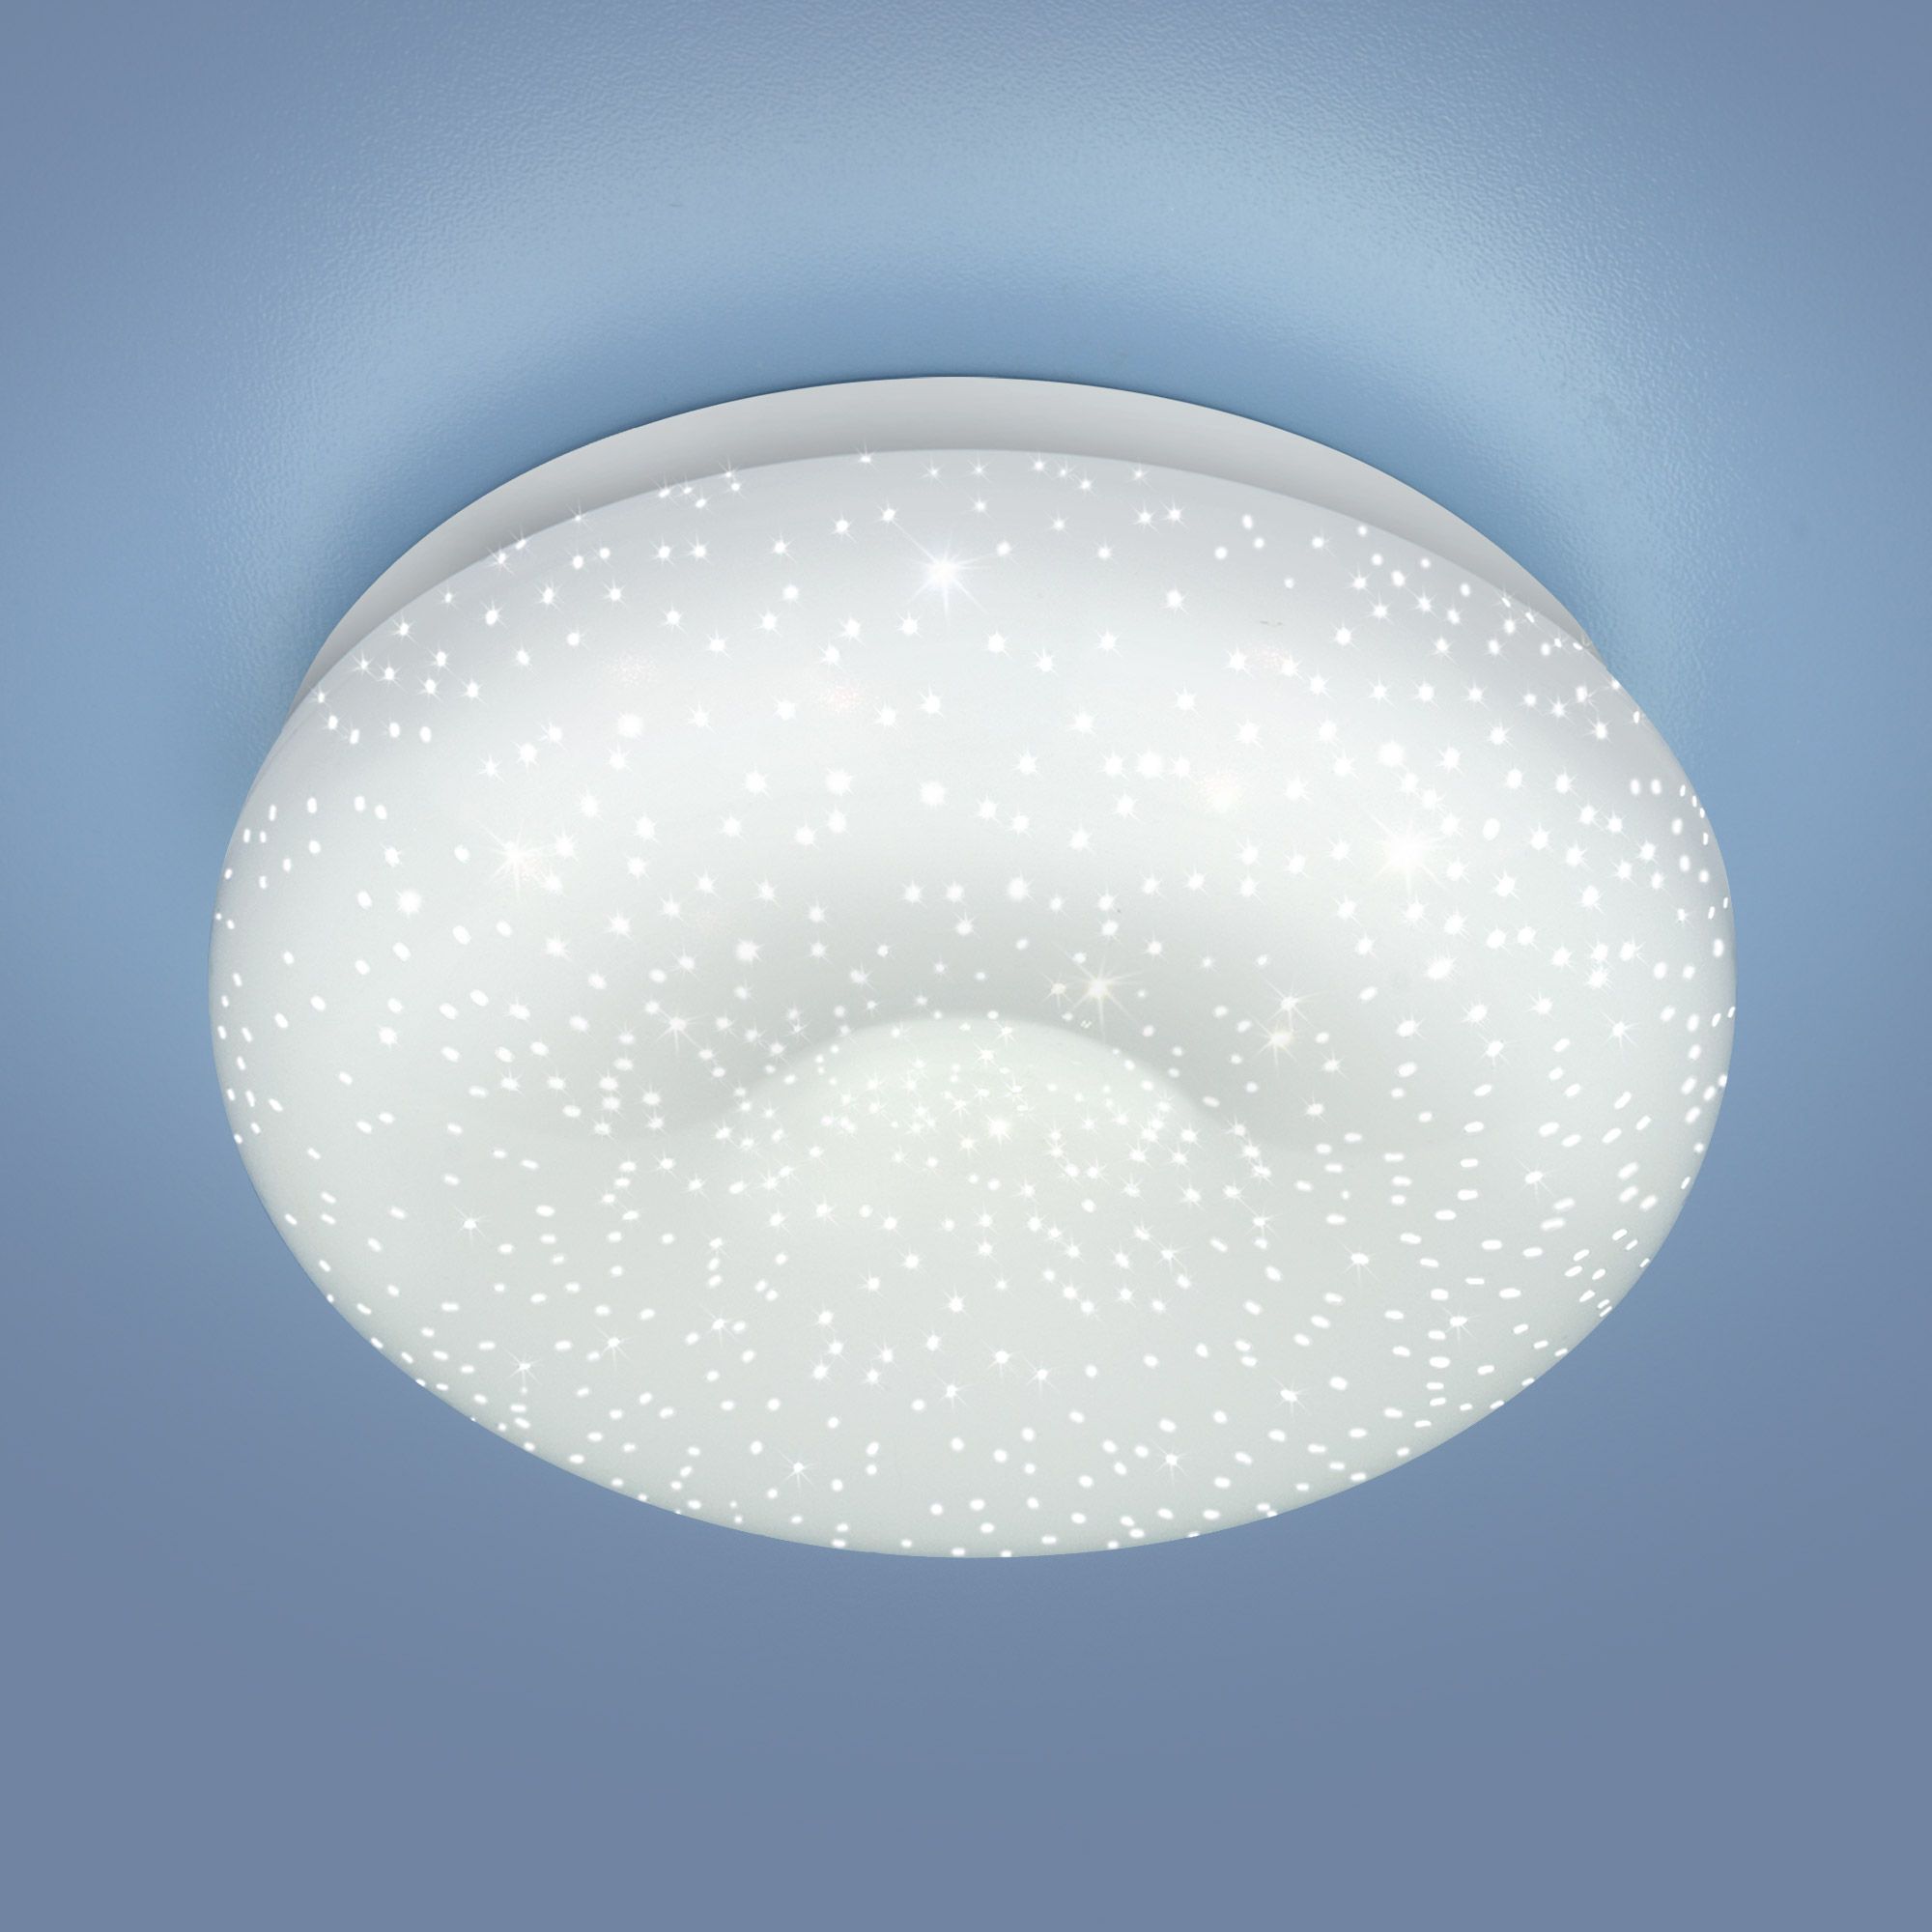 Встраиваемый потолочный светодиодный светильник 9910 LED 8W WH белый. Фото 1